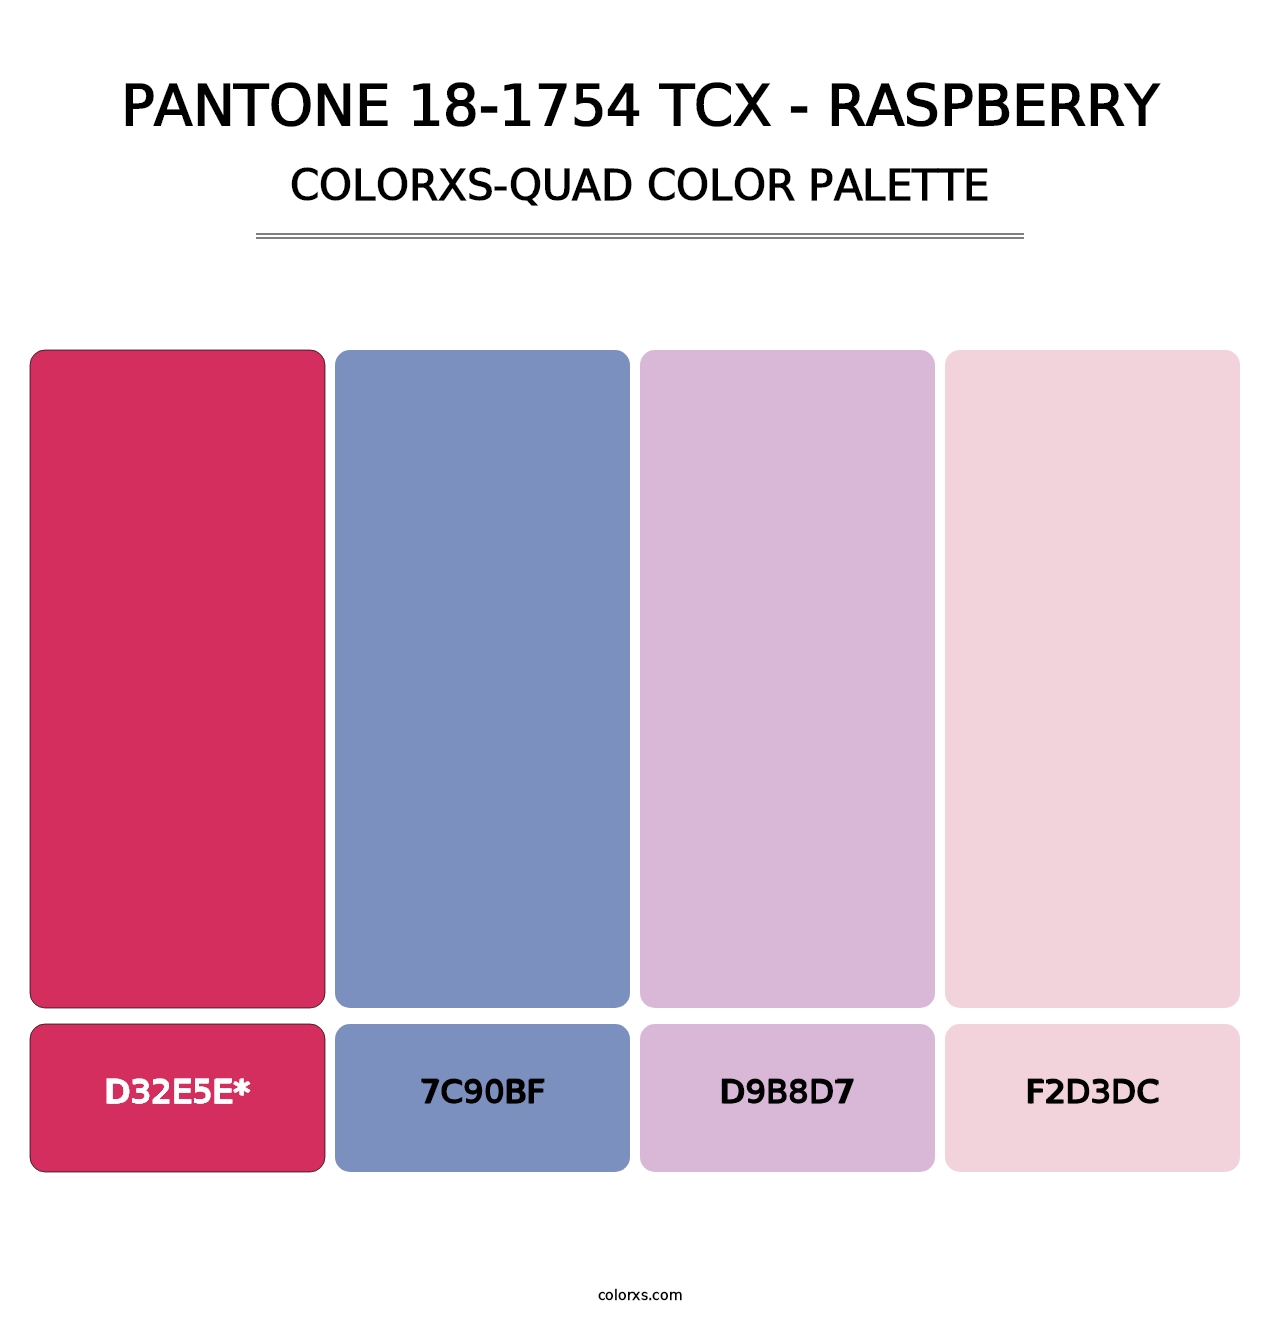 PANTONE 18-1754 TCX - Raspberry - Colorxs Quad Palette